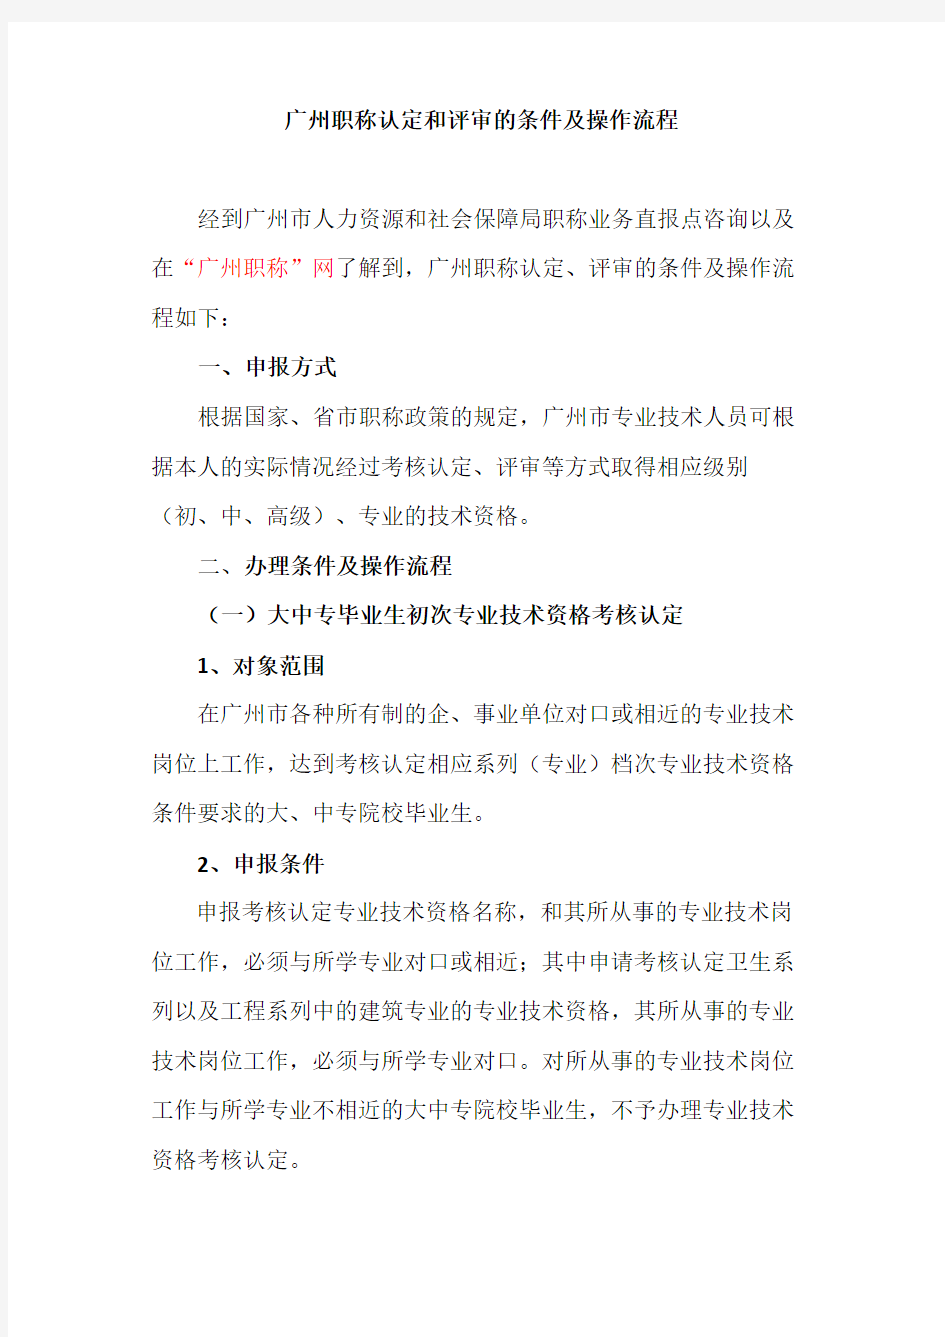 广州职称认定和评审的条件及操作流程